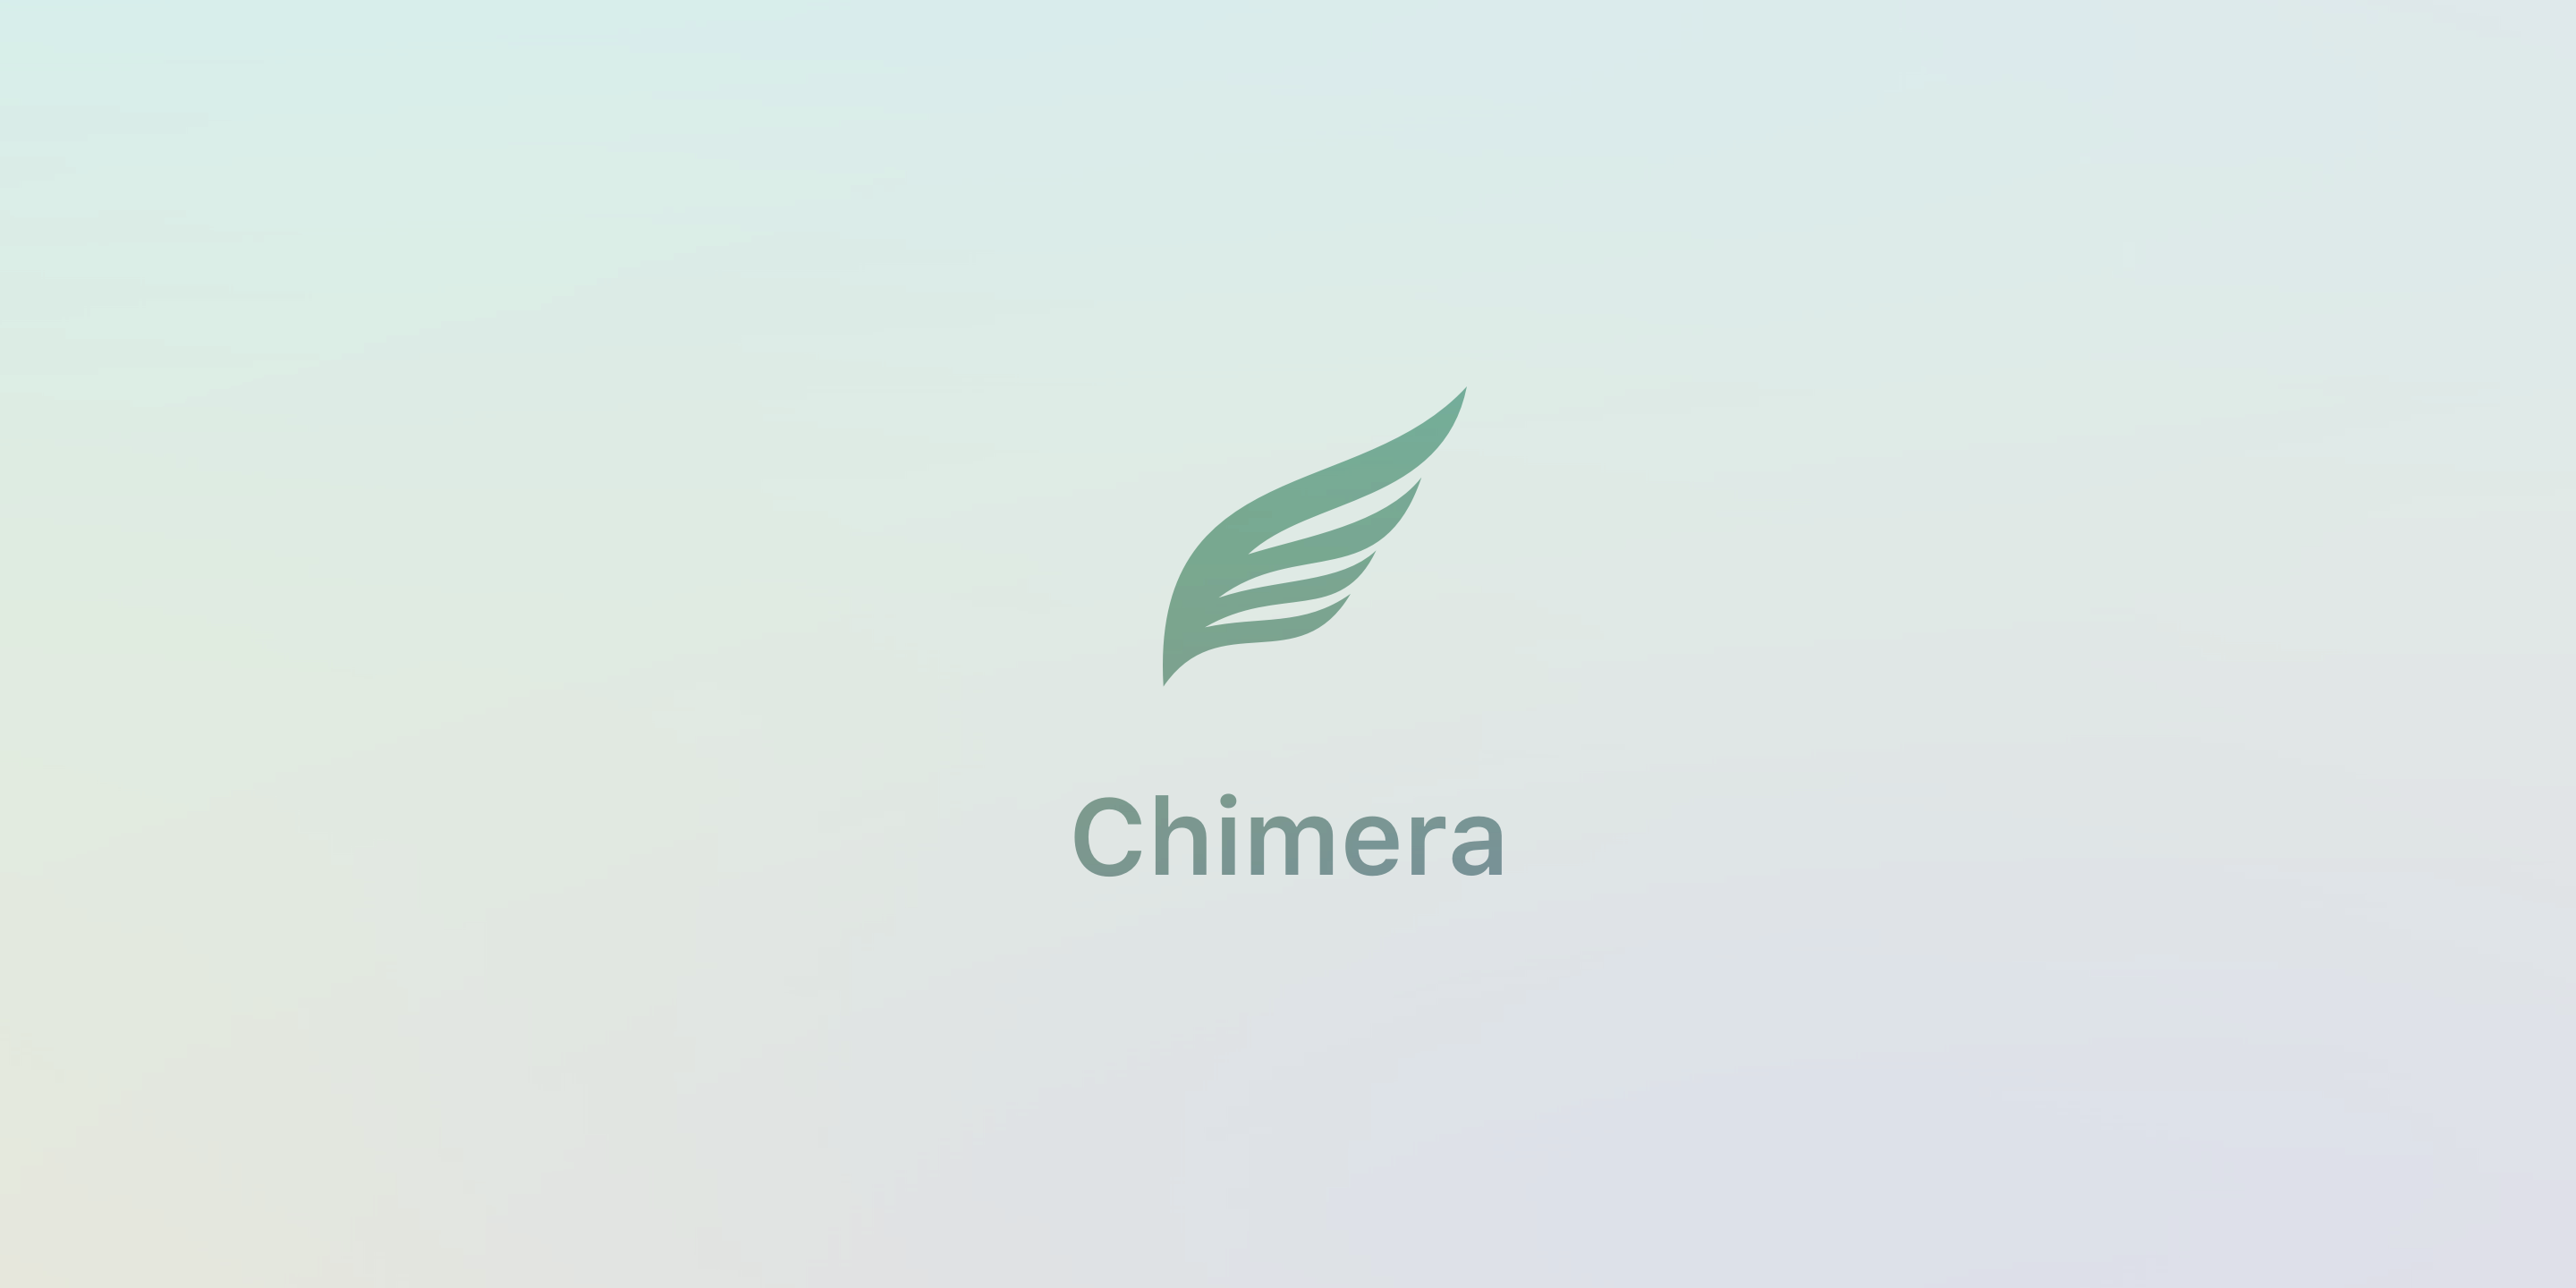 Джейлбрейк Chimera был обновлён до версии 1.2.8 с поддержкой устройств A9-A11 с iOS ...